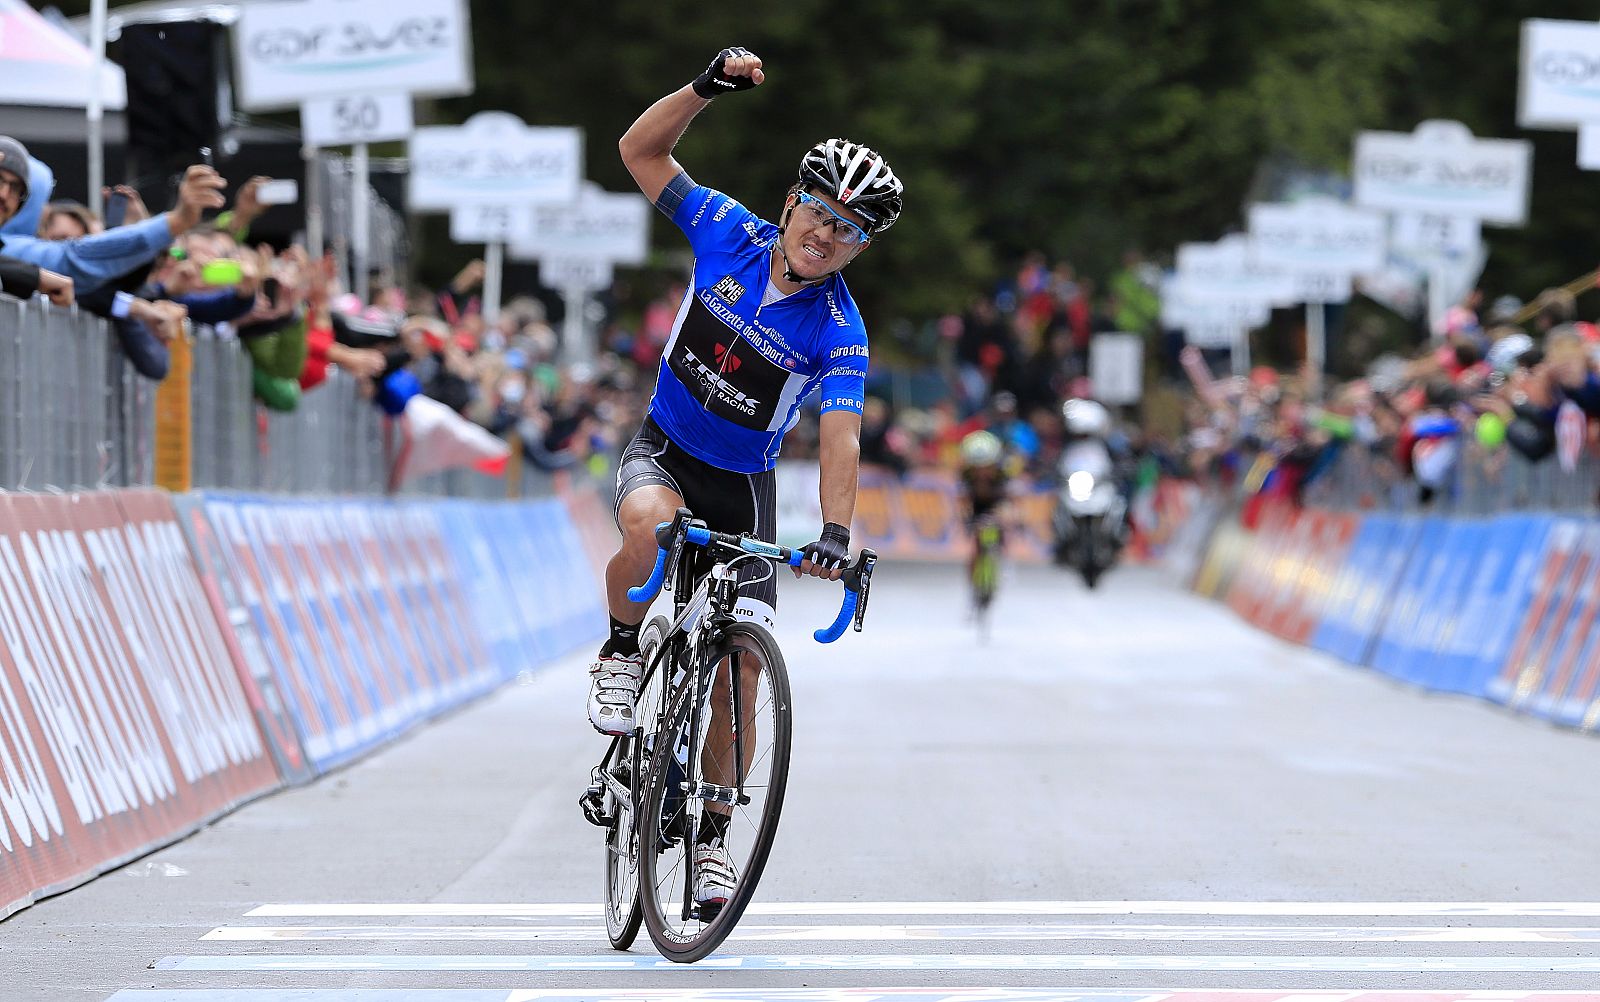 El colombiano Arredondo gana la decimoctava etapa del Giro